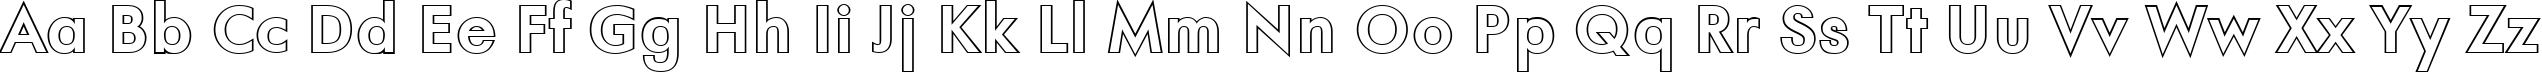 Пример написания английского алфавита шрифтом a_FuturaOrtoOtl Bold